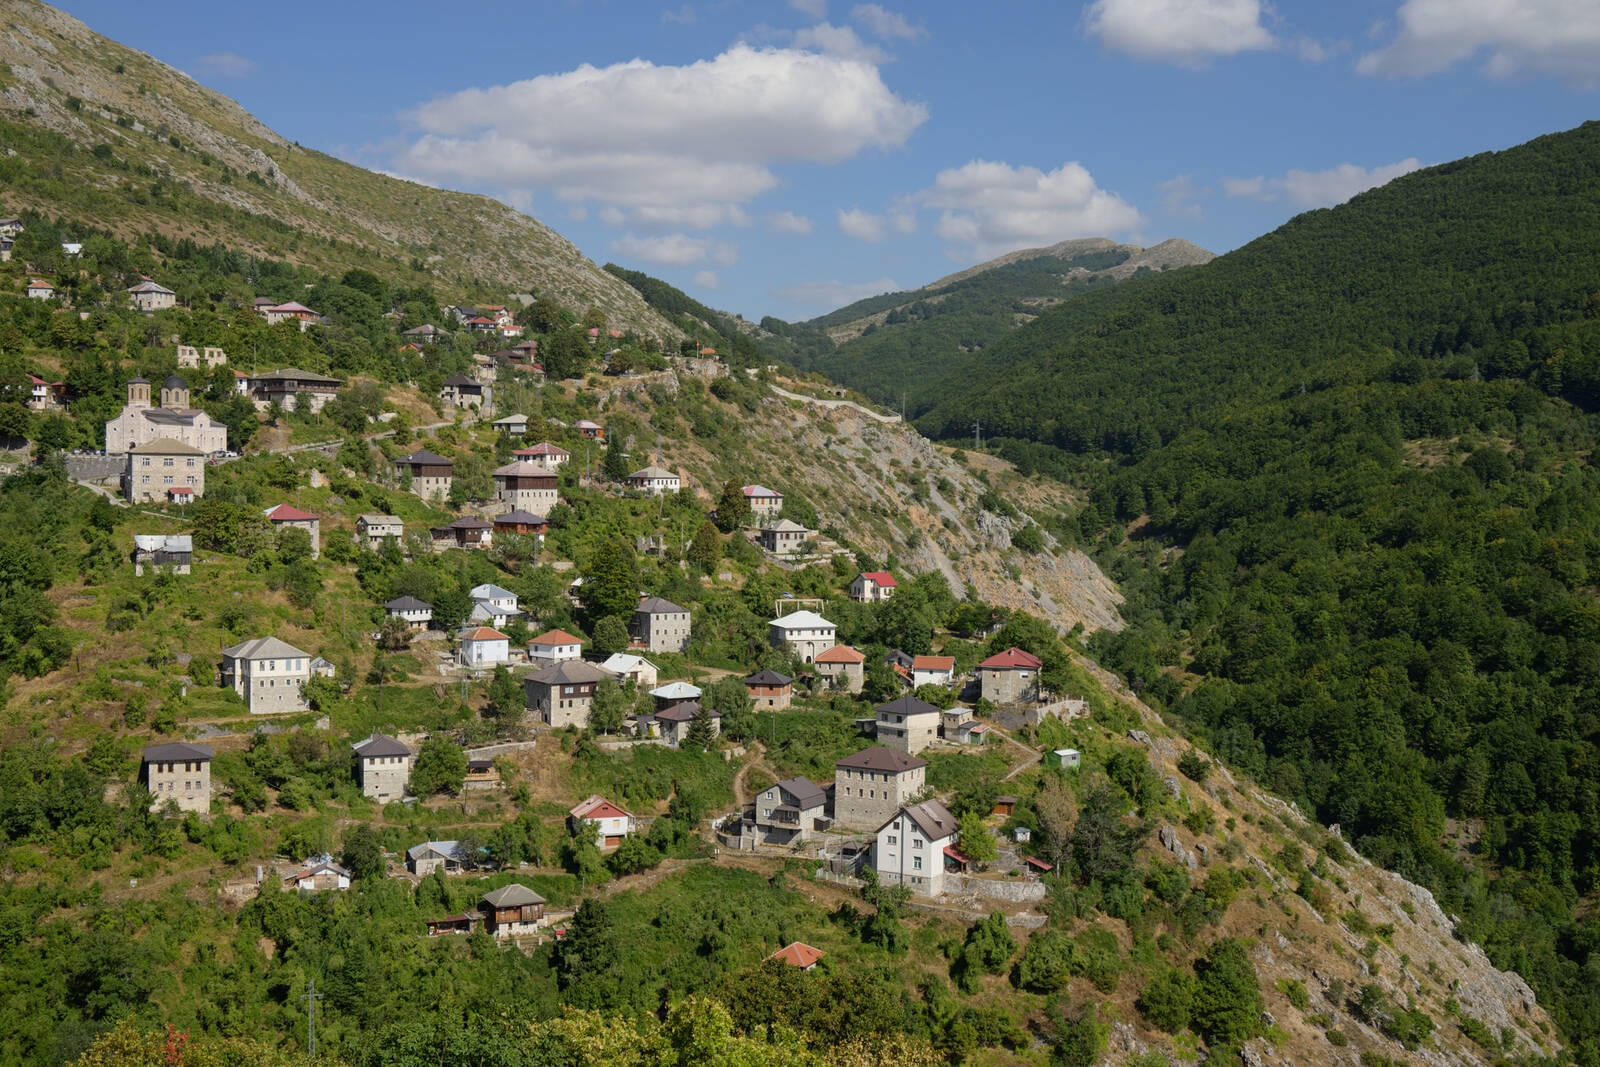 Image of Galichnik Village by Luka Esenko